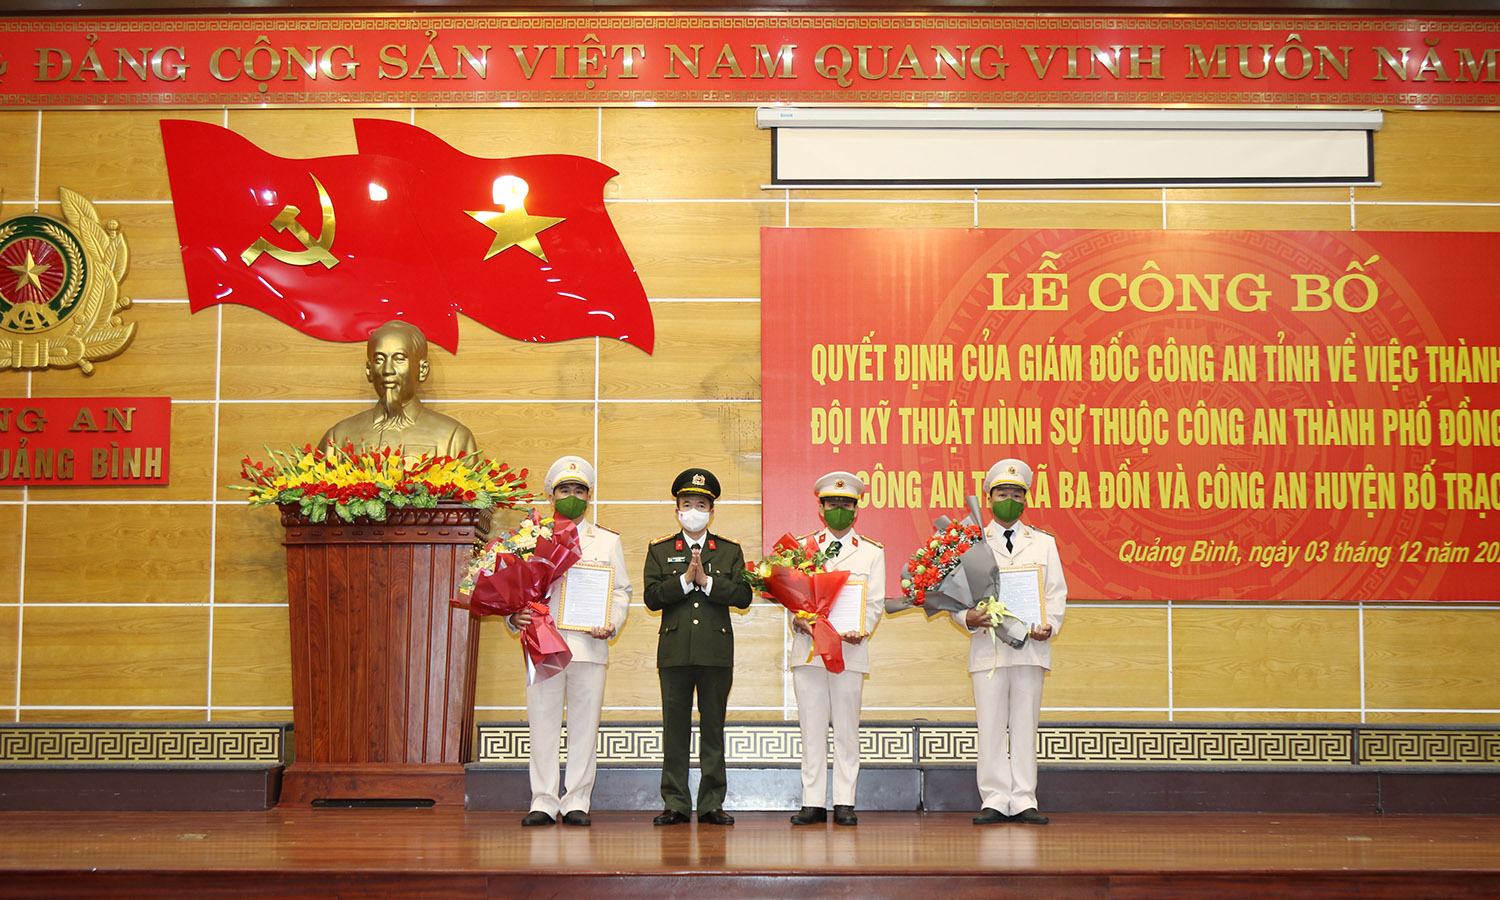 Đại tá Nguyễn Tiến Nam, Giám đốc Công an tỉnh trao các quyết định của Giám đốc Công an tỉnh về việc thành lập Đội Kỹ thuật hình sự